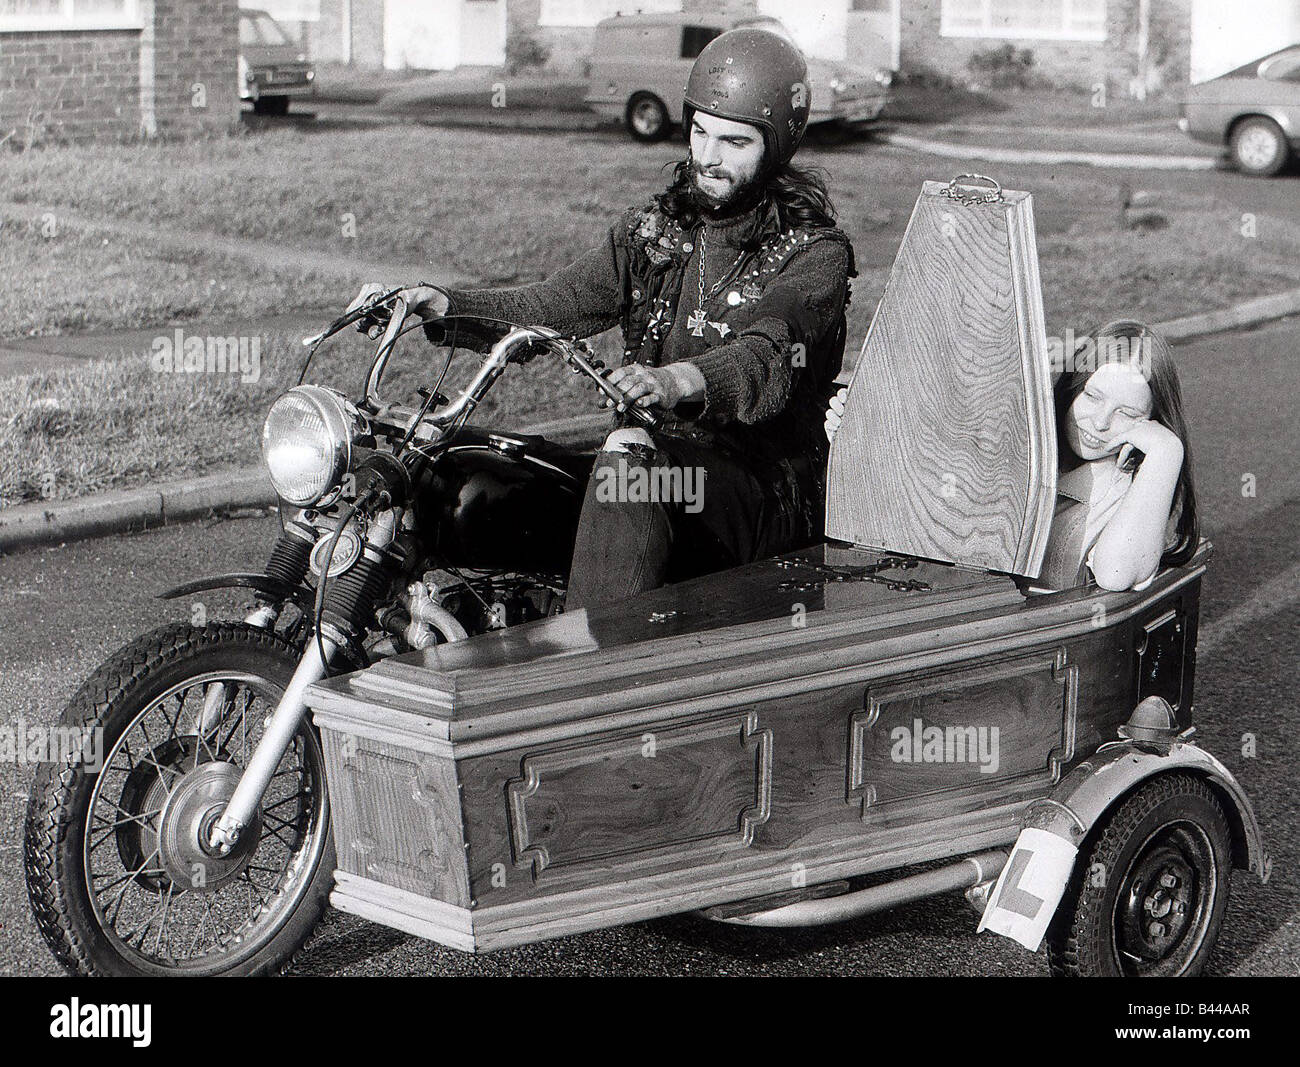 Moto et side-car Dave Phillips od Sussex Russington a équipé un cercueil  comme un side-car à sa moto Dave prend sa femme Photo Stock - Alamy